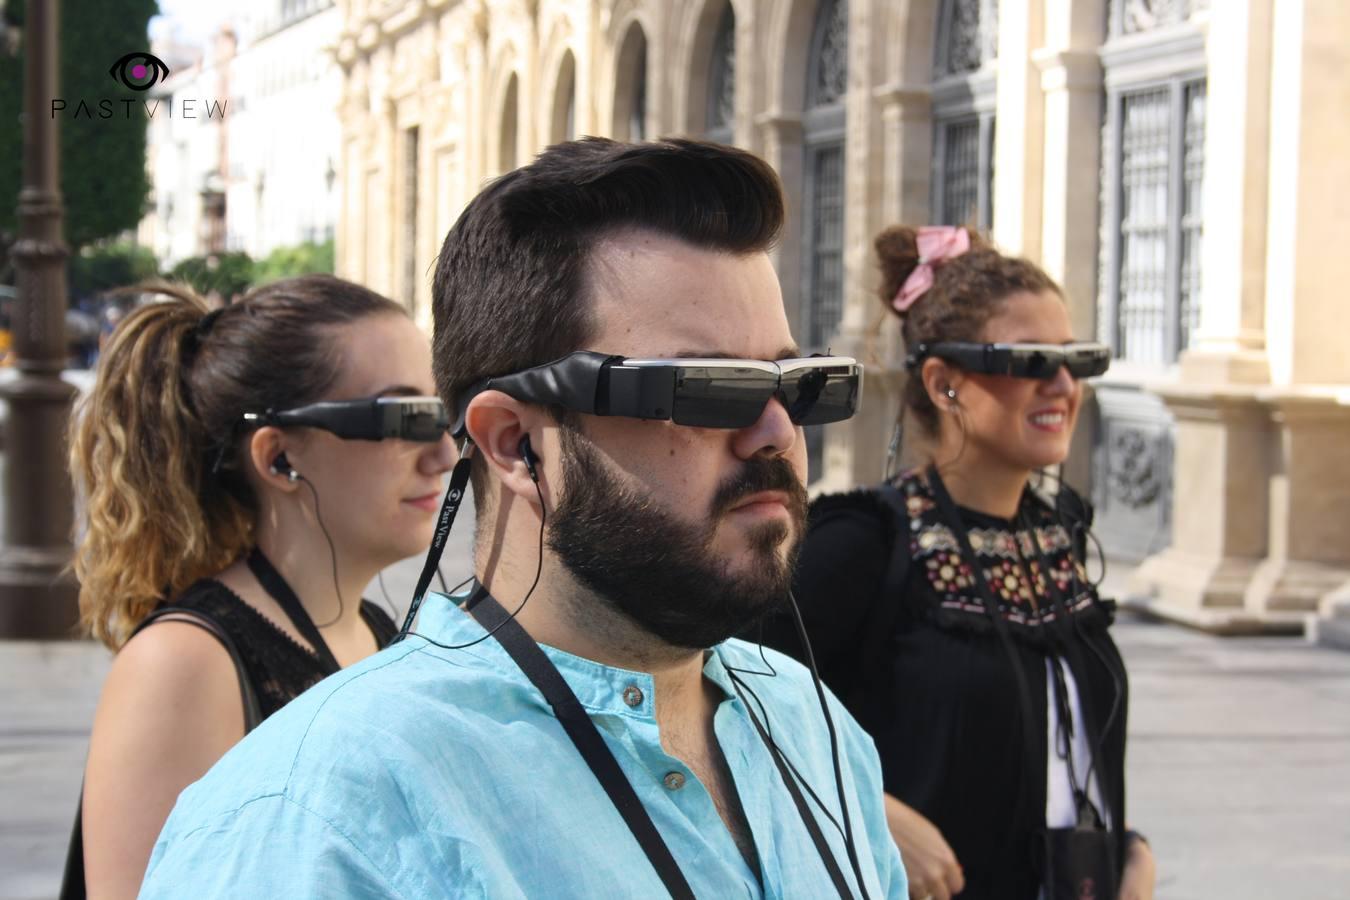 Descubre cómo era Sevilla a través de la realidad virtual de Past View